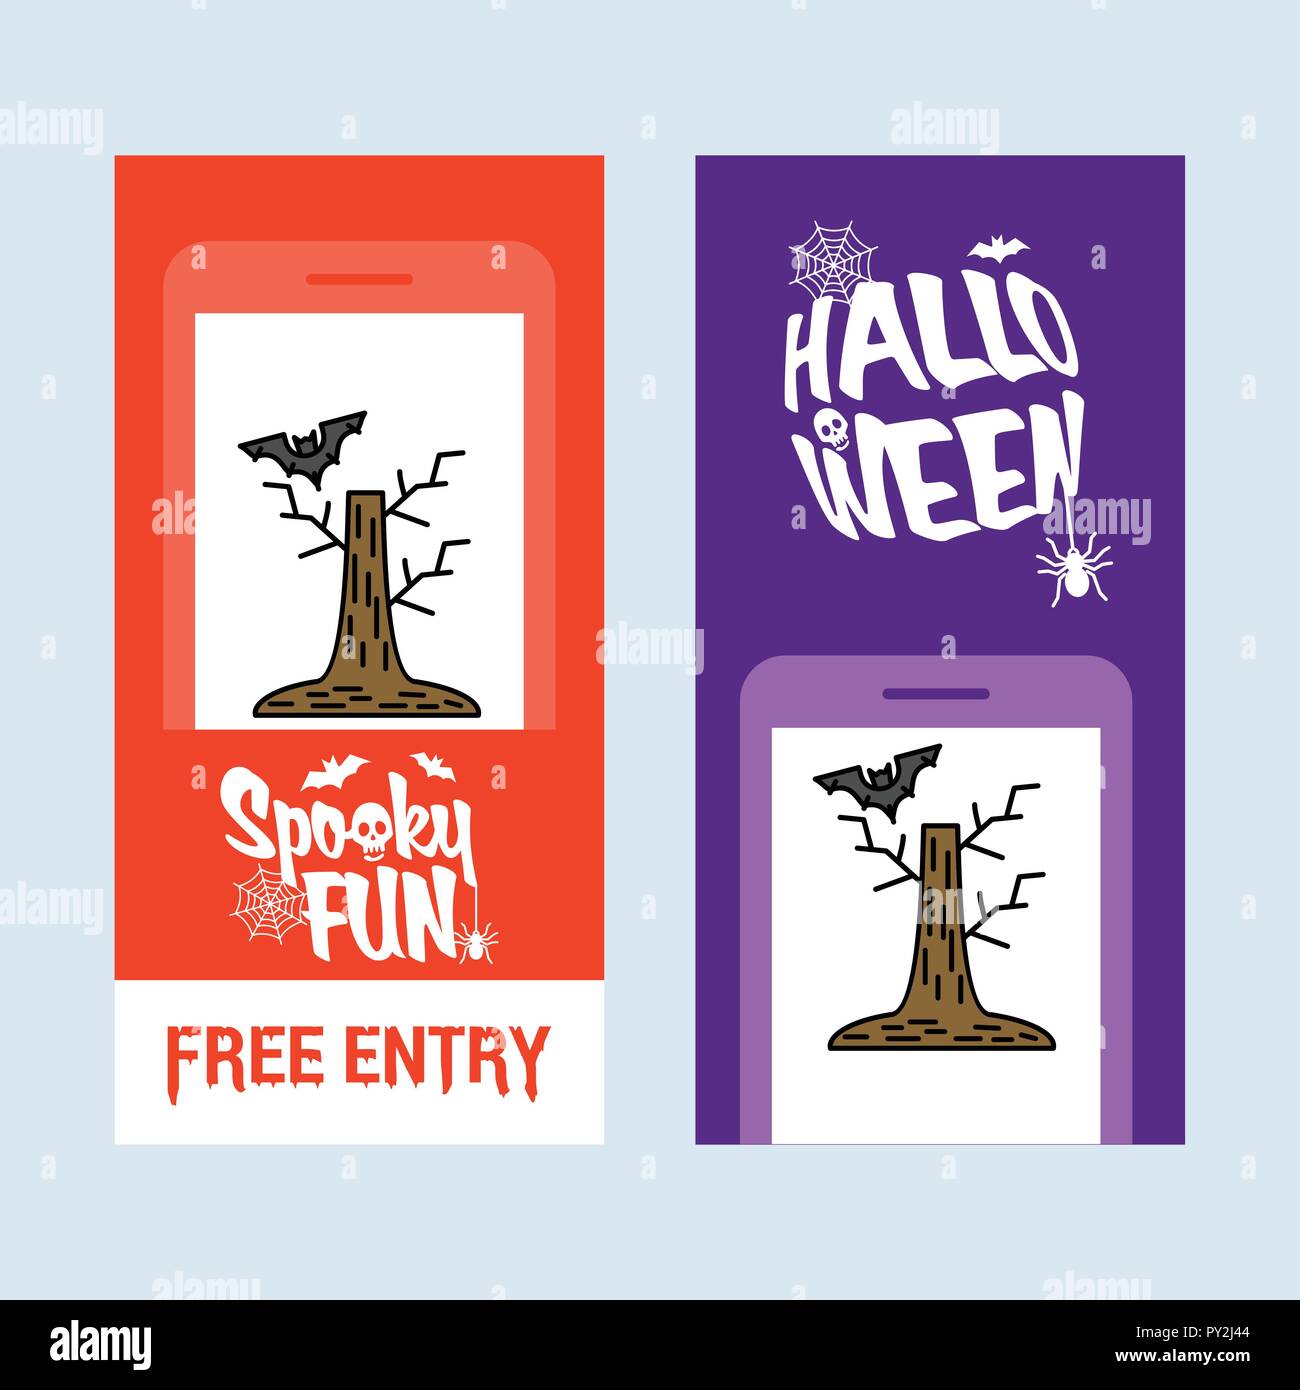 Happy Halloween Einladung Design Mit Baum Und Bat Vektor Stock Vektorgrafik Alamy